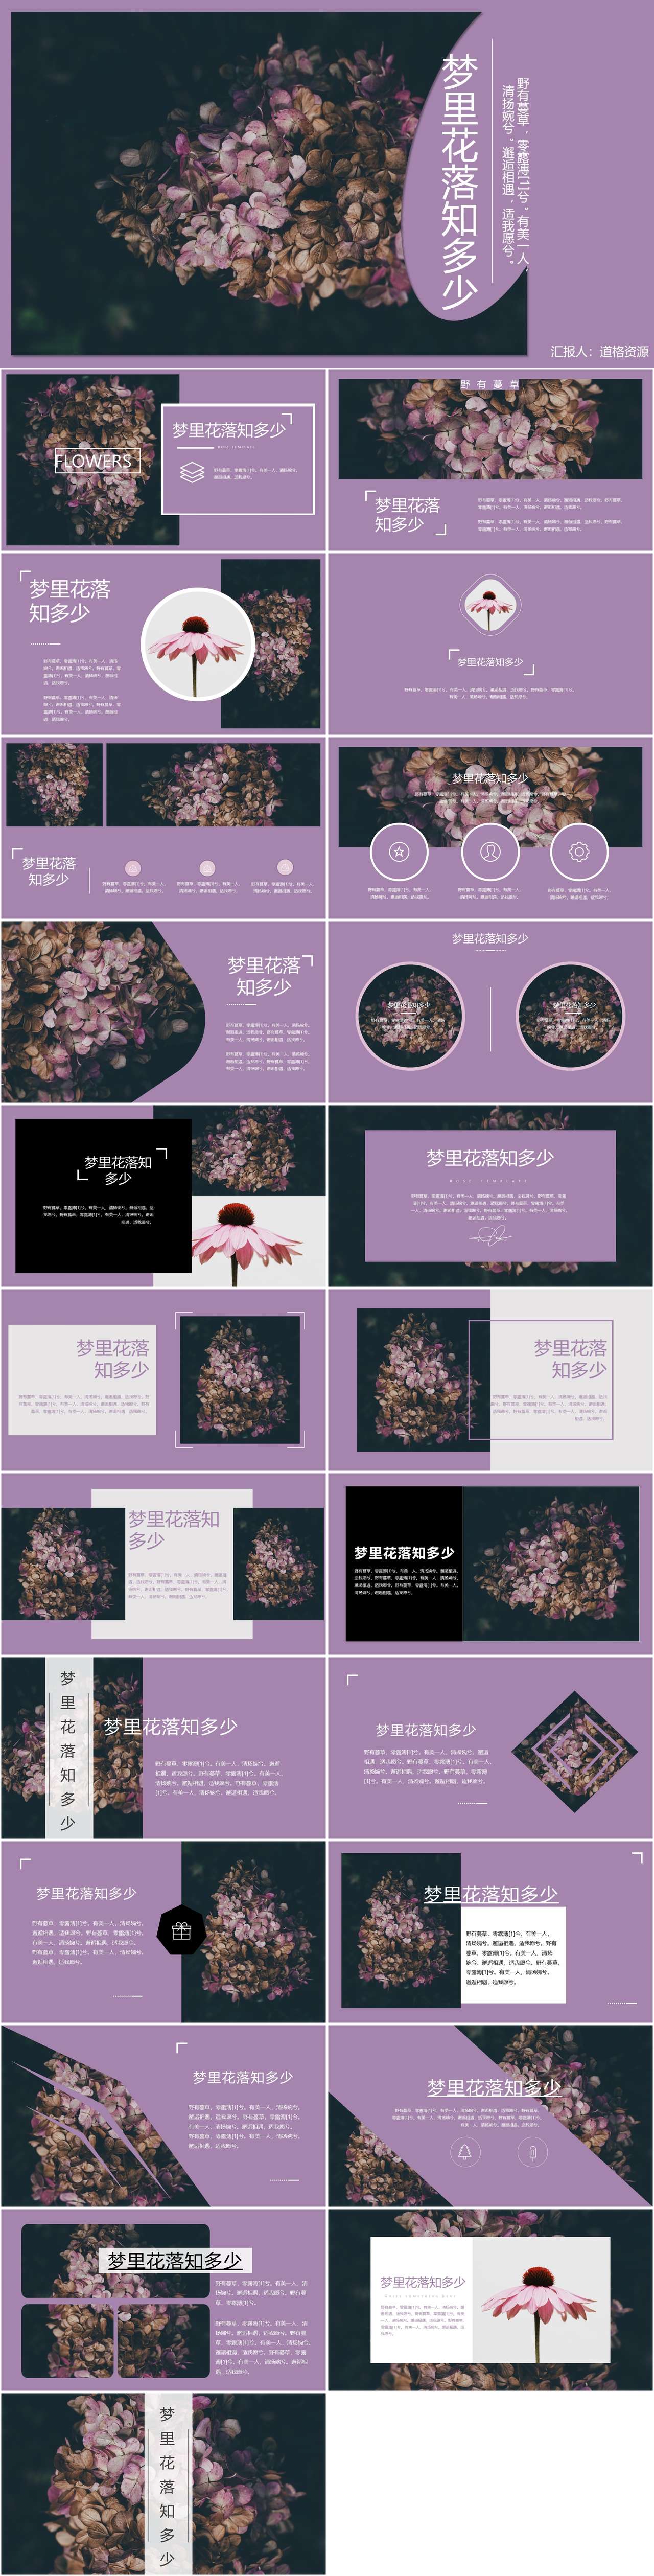 杂志风高雅紫相册图片展示PPT模板（2）